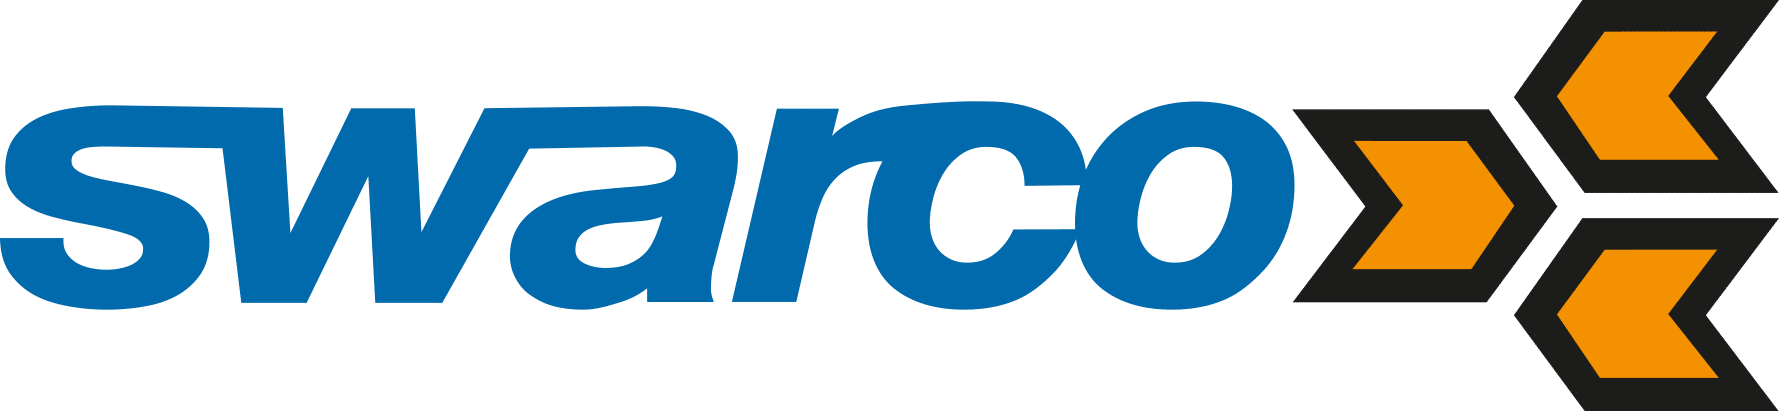 SWARCO_Logo_4c